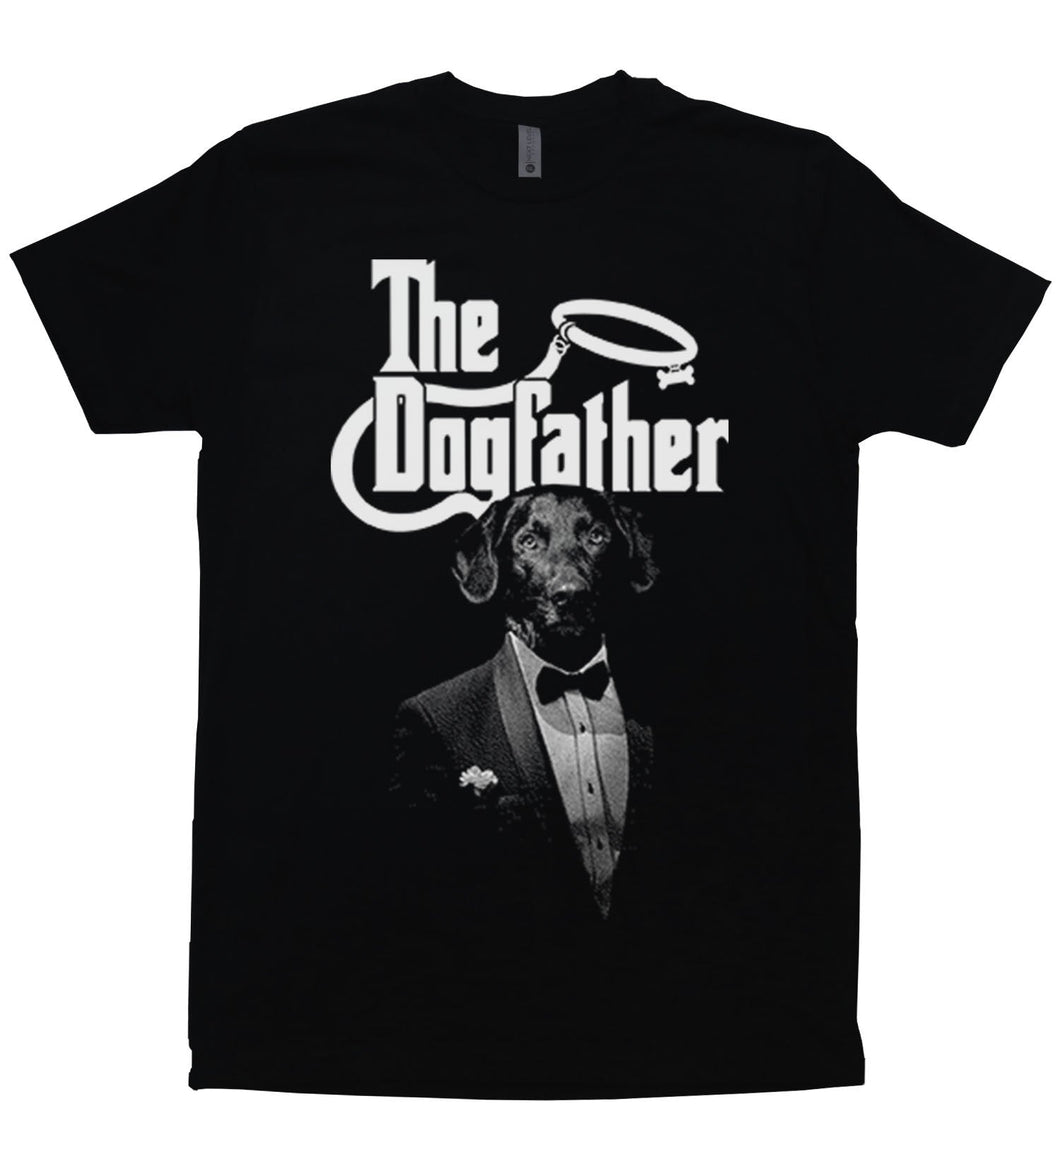 The Dogfather - Black Short Sleeve Unisex T-Shirt - Baffle